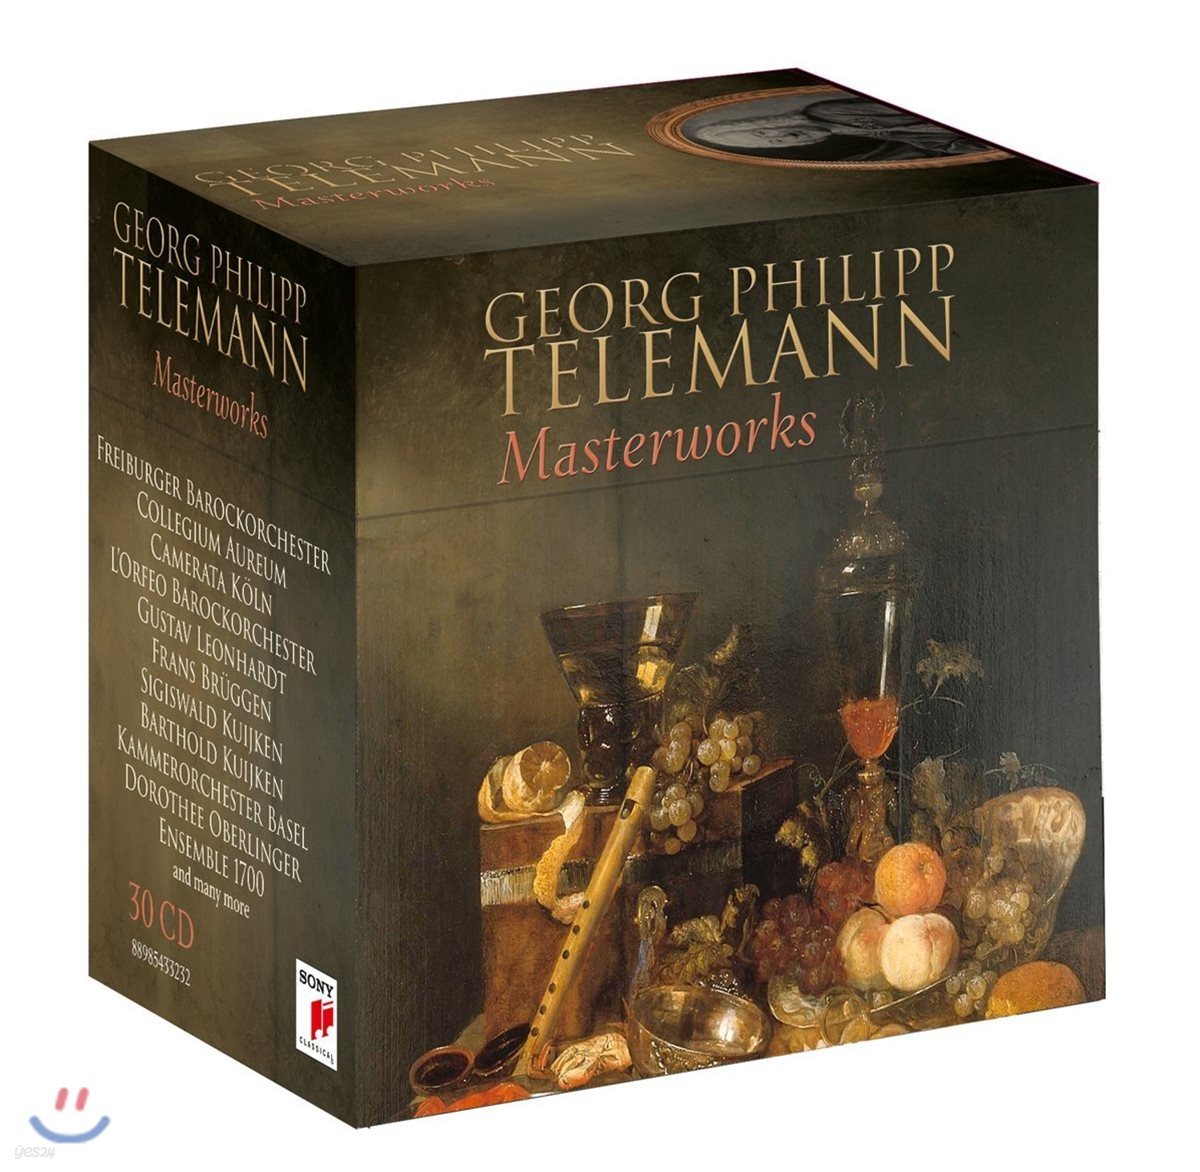 텔레만 마스터웍스 - 사후 250주년 30CD 박스세트 (Georg Philipp Telemann: Masterworks)